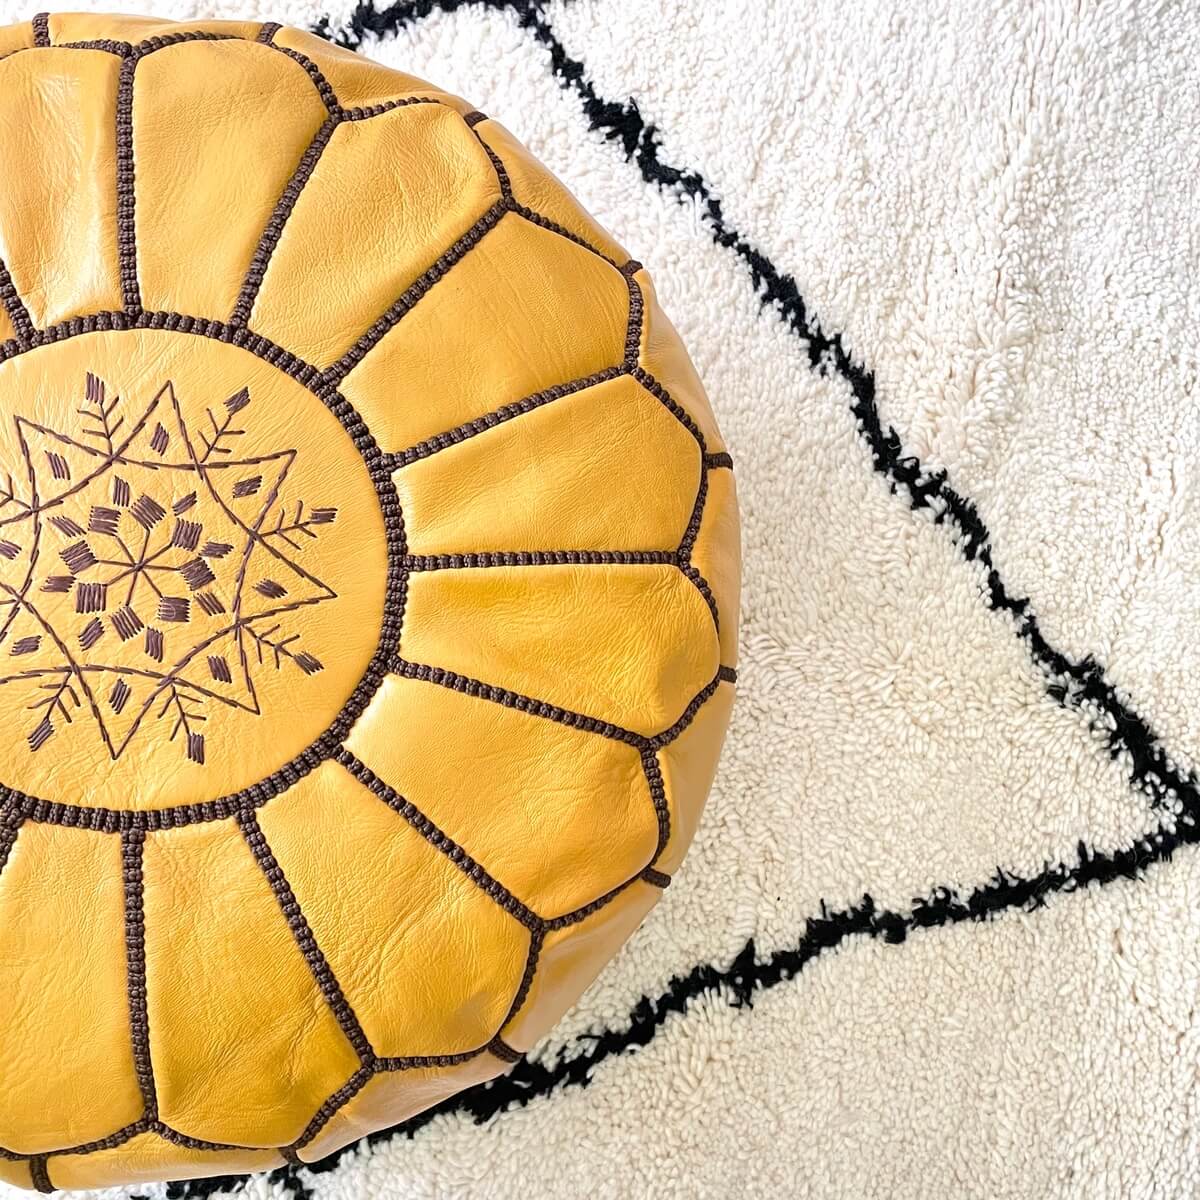 taburet puf marocan din piele naturala creat si vopsit manual de artizani din maroc in culoarea mustar cu broderie contrastanta